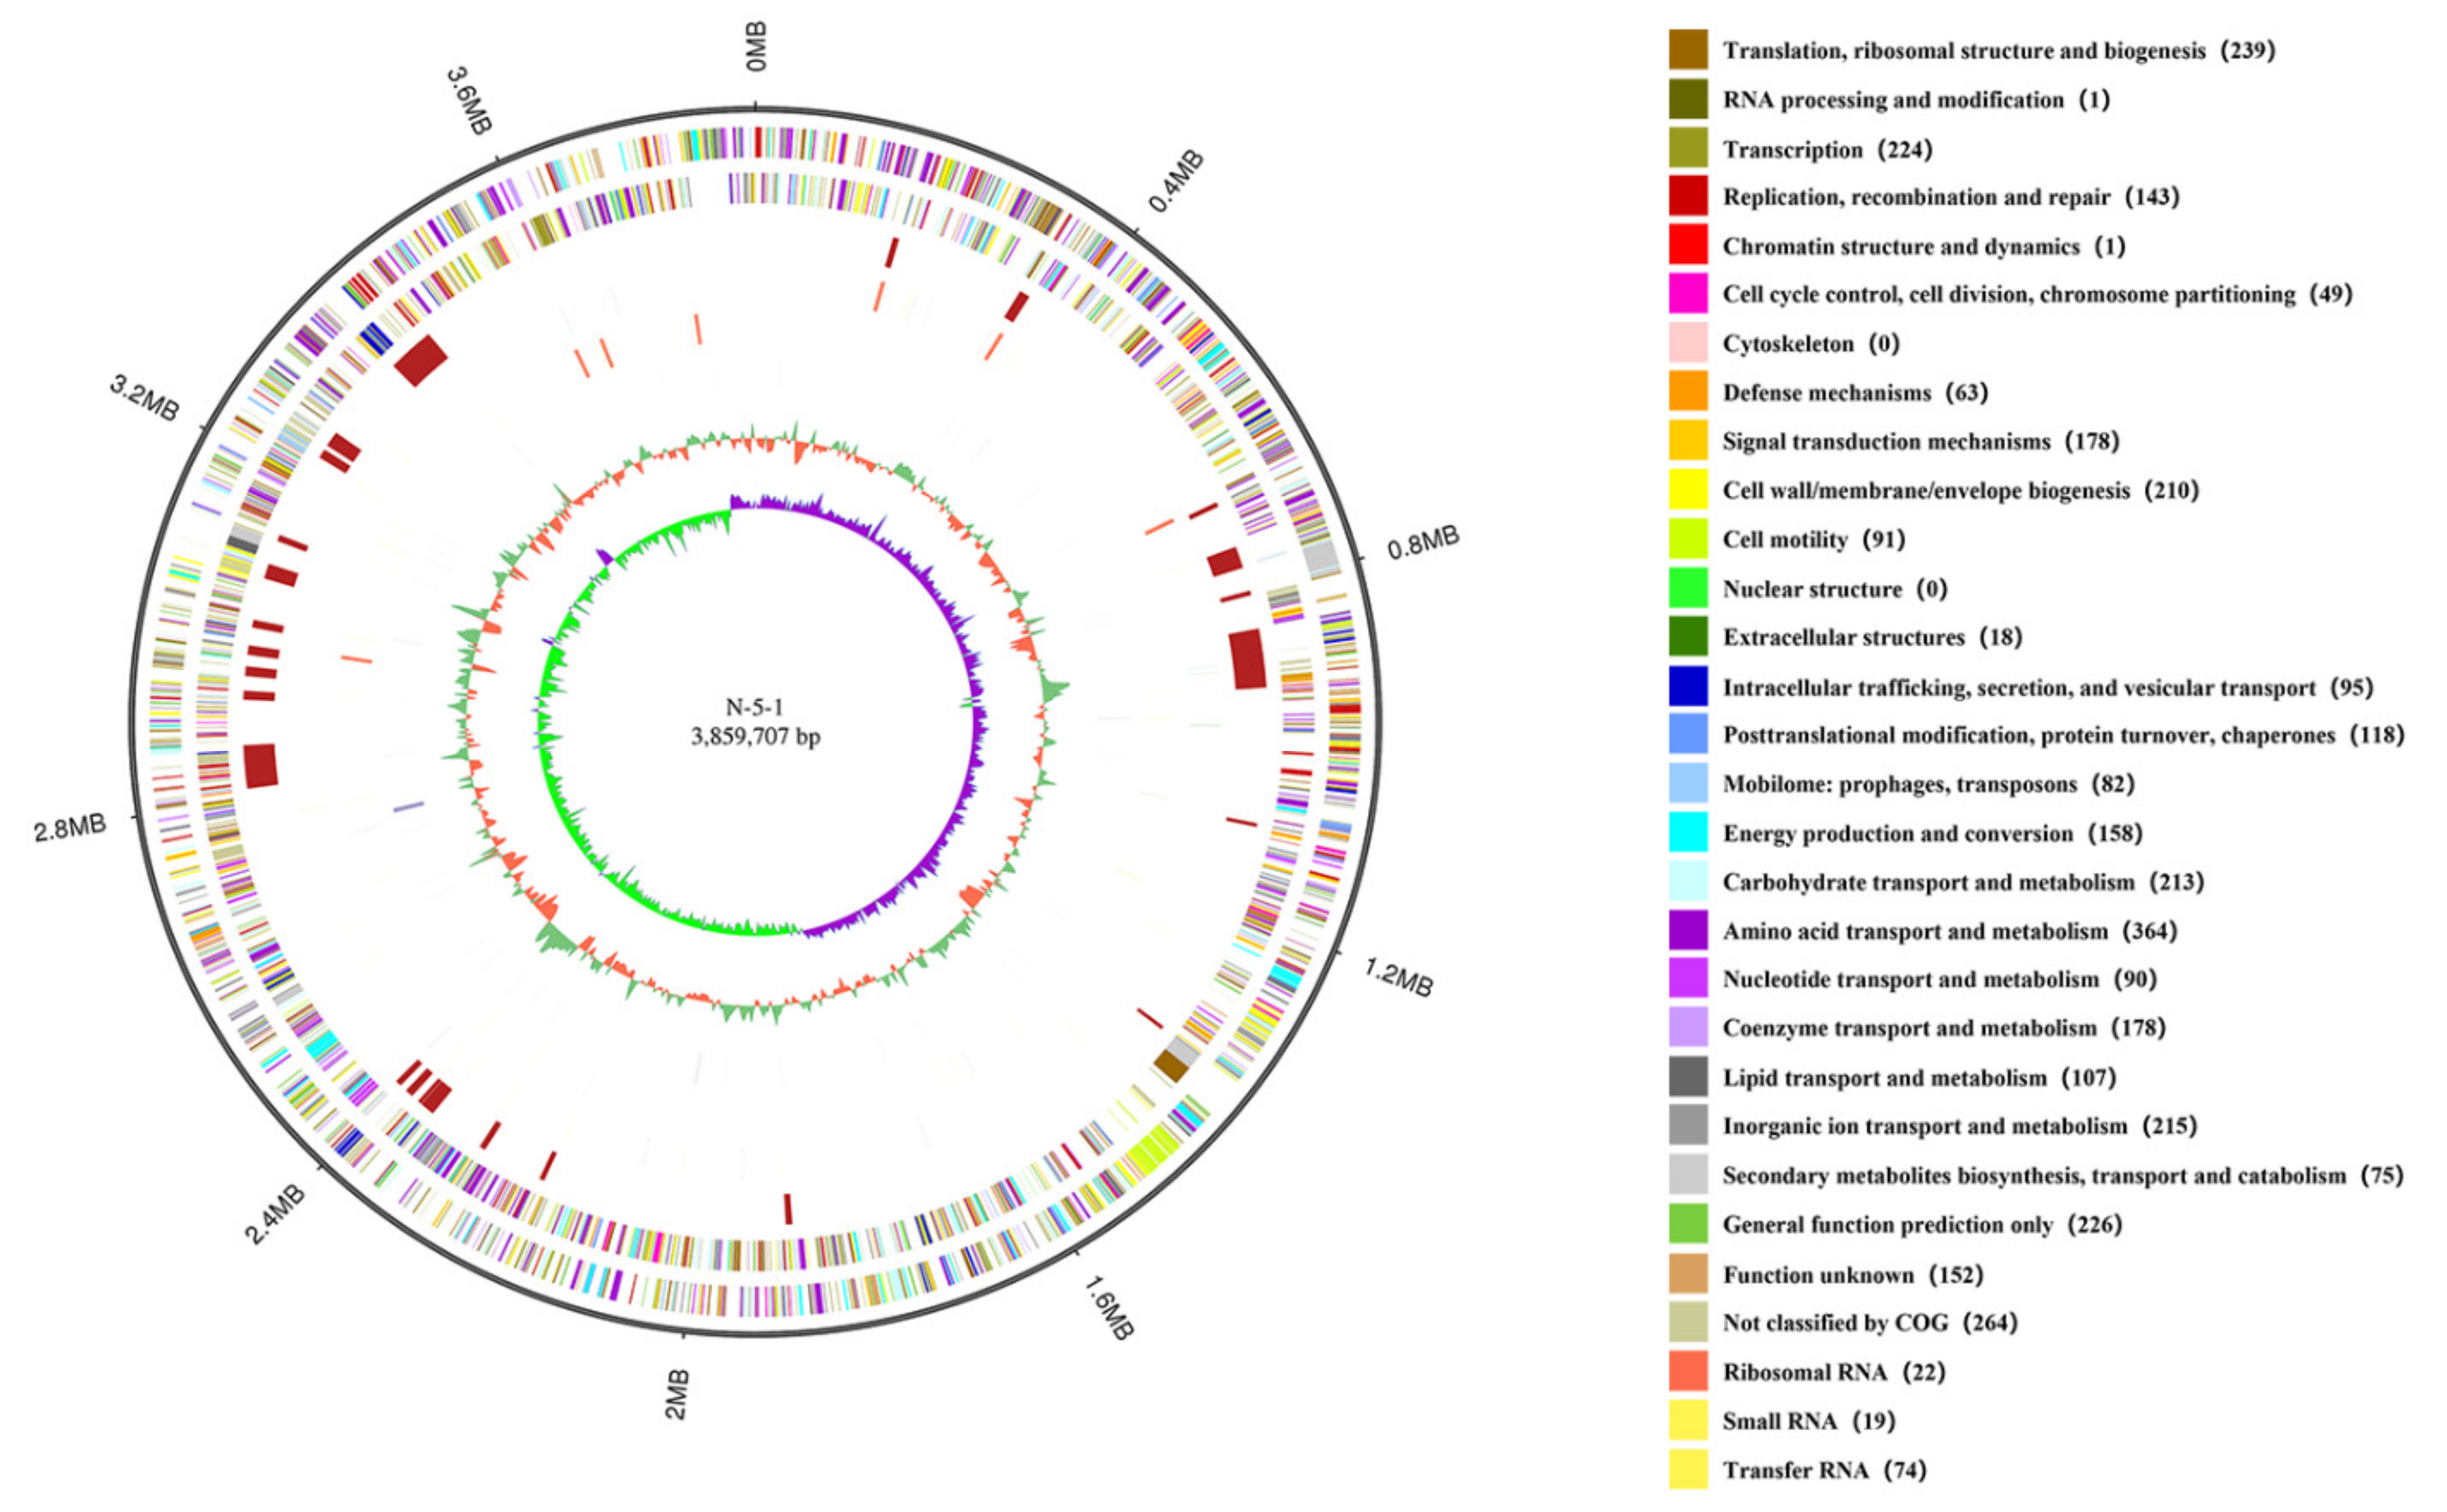 The defense island repertoire of the Escherichia coli pan-genome